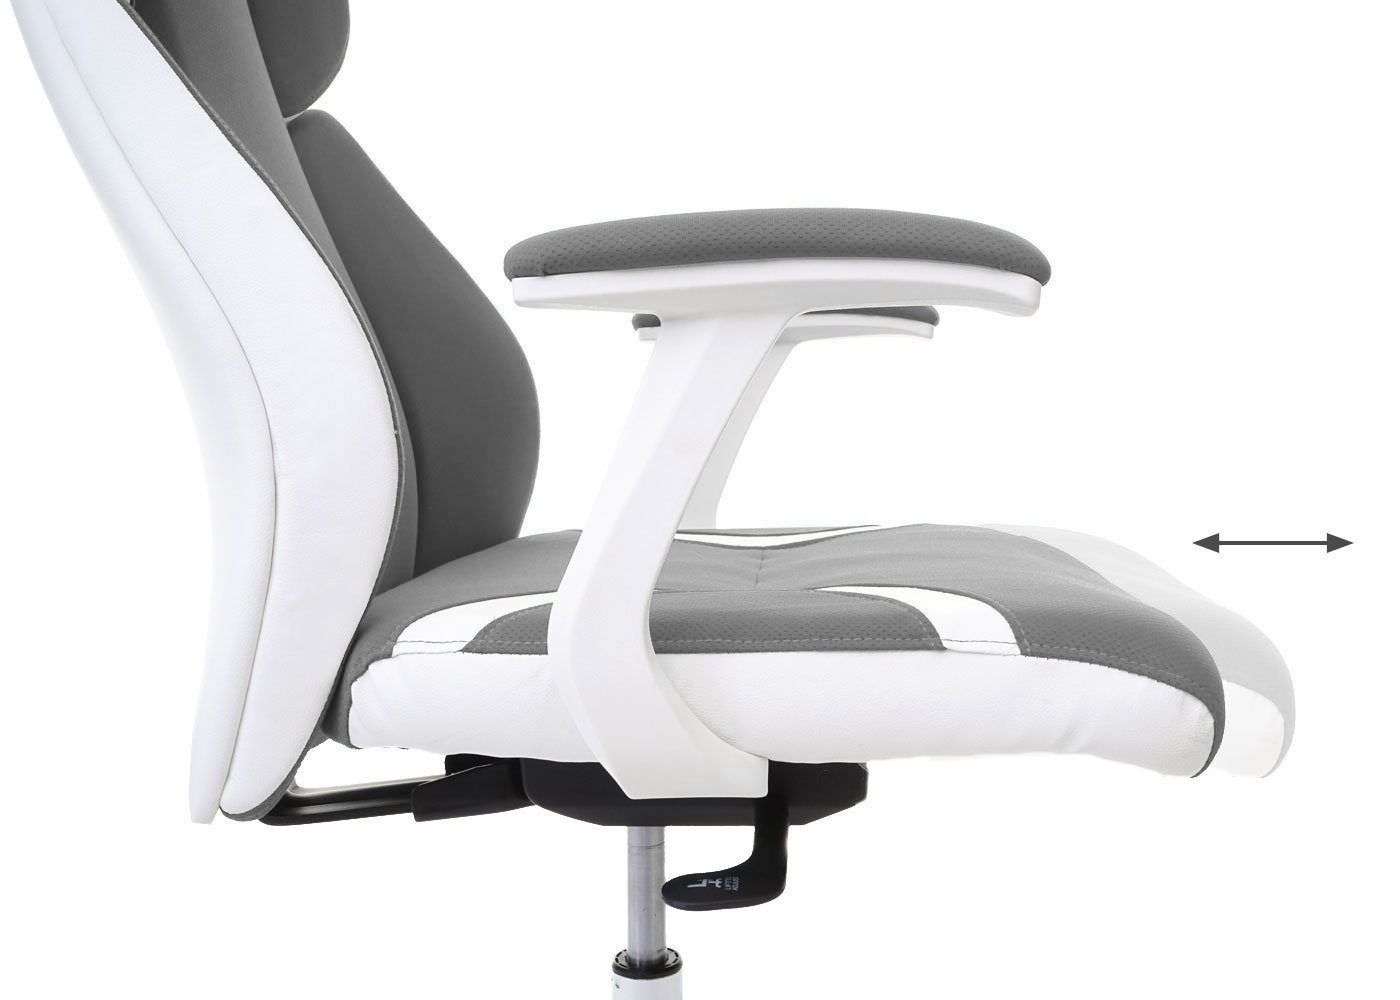 Kopfstütze, Sitz grau/weiß Höhenverstellbare Sliding-Funktion, MCW Schreibtischstuhl Wippfunktion arretierbar, MCW-F12, Sliding